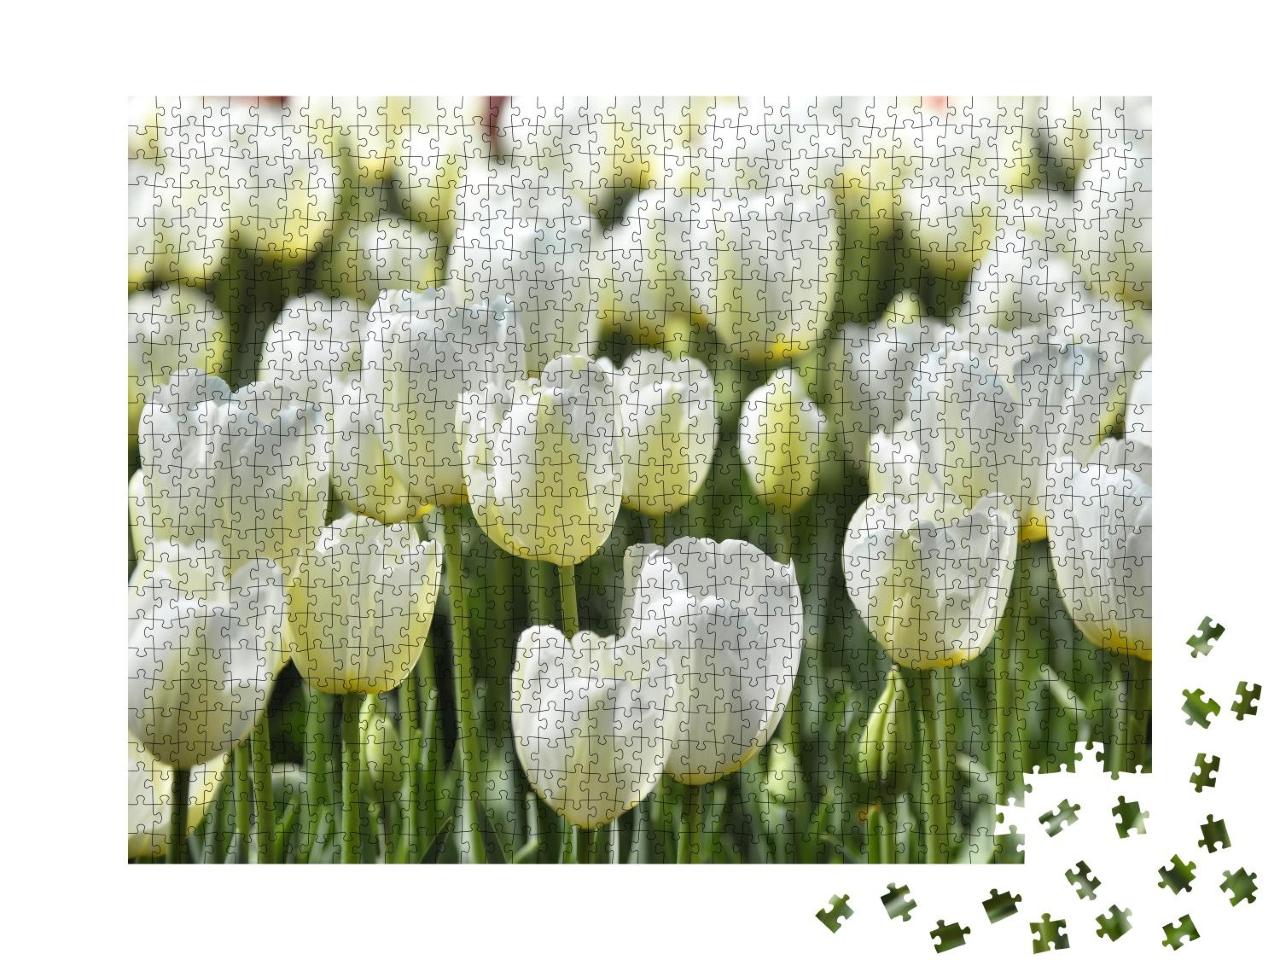 Puzzle 1000 Teile „Weiße Tulpen: Feld mit Blumen, Istanbul“